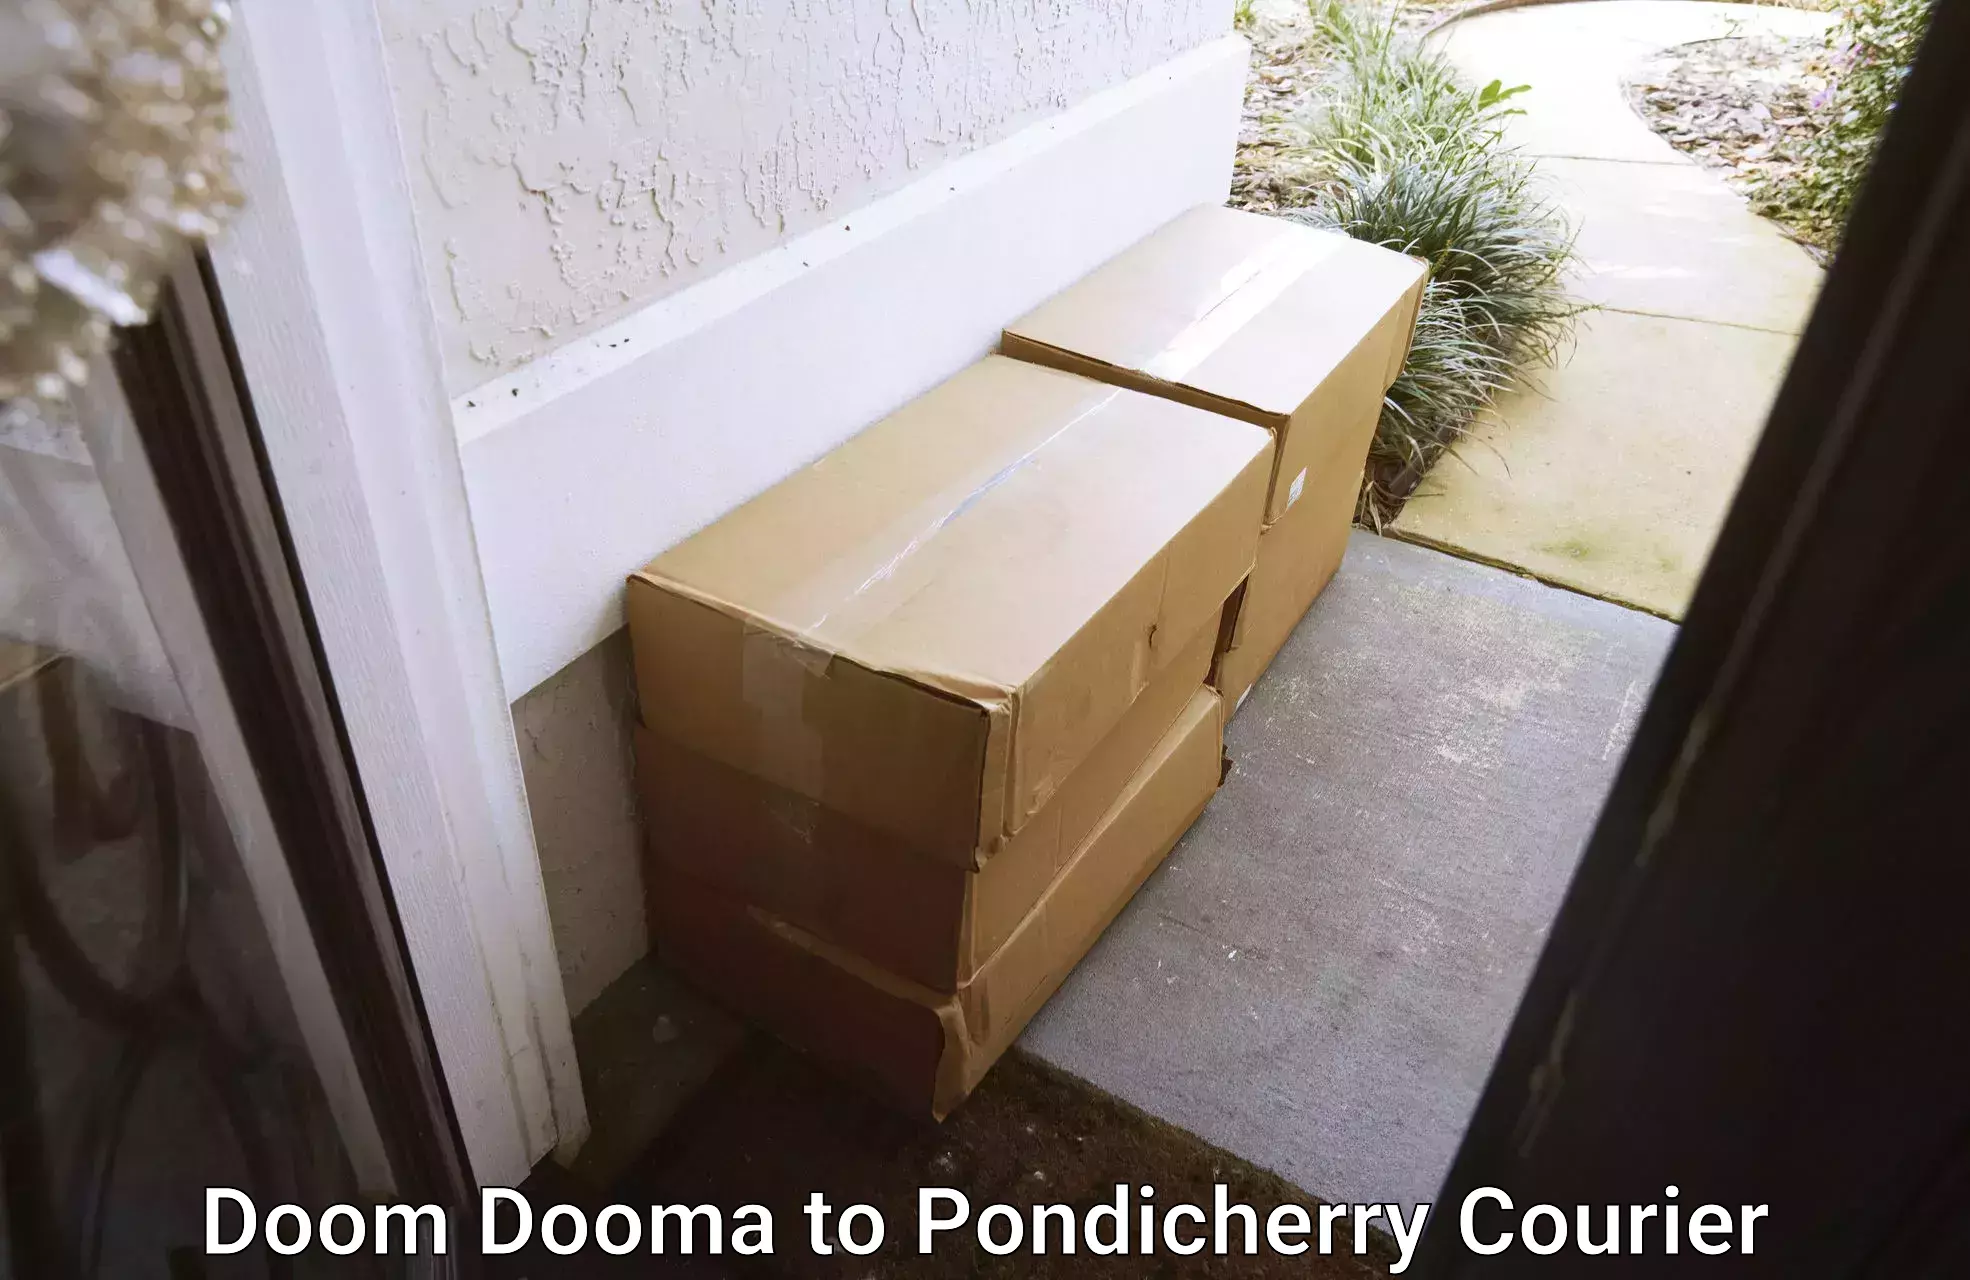 Cash on delivery service Doom Dooma to Pondicherry